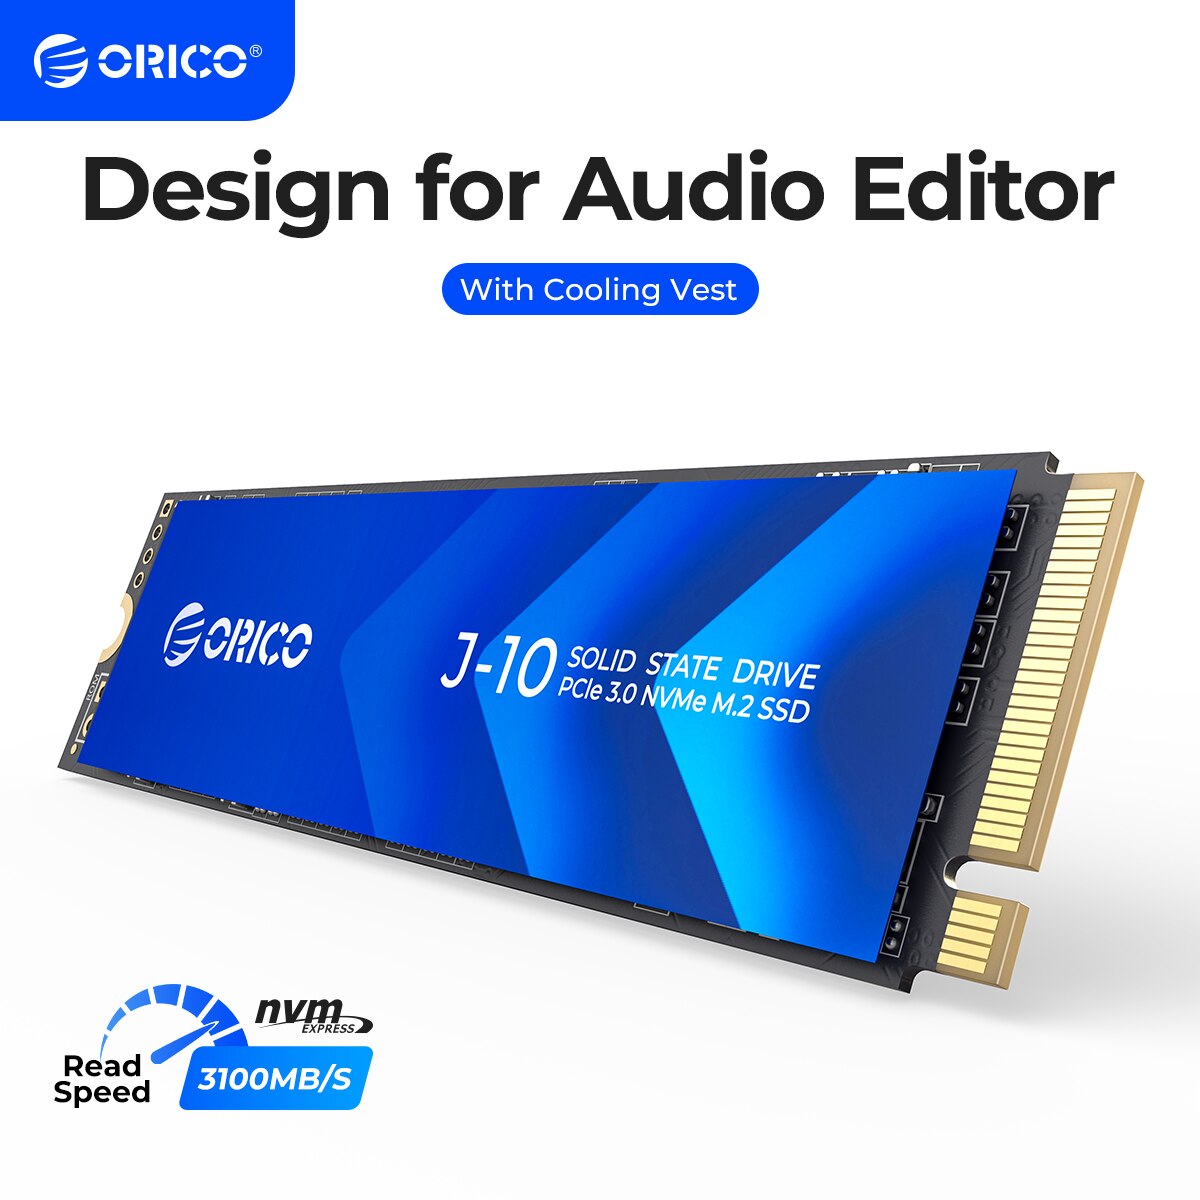 ORICO M.2 SSD M2 NVMe SSD PCIe 3.0 SSD NVMe Gen3 x4 SSD M.2 M Key 2280mm